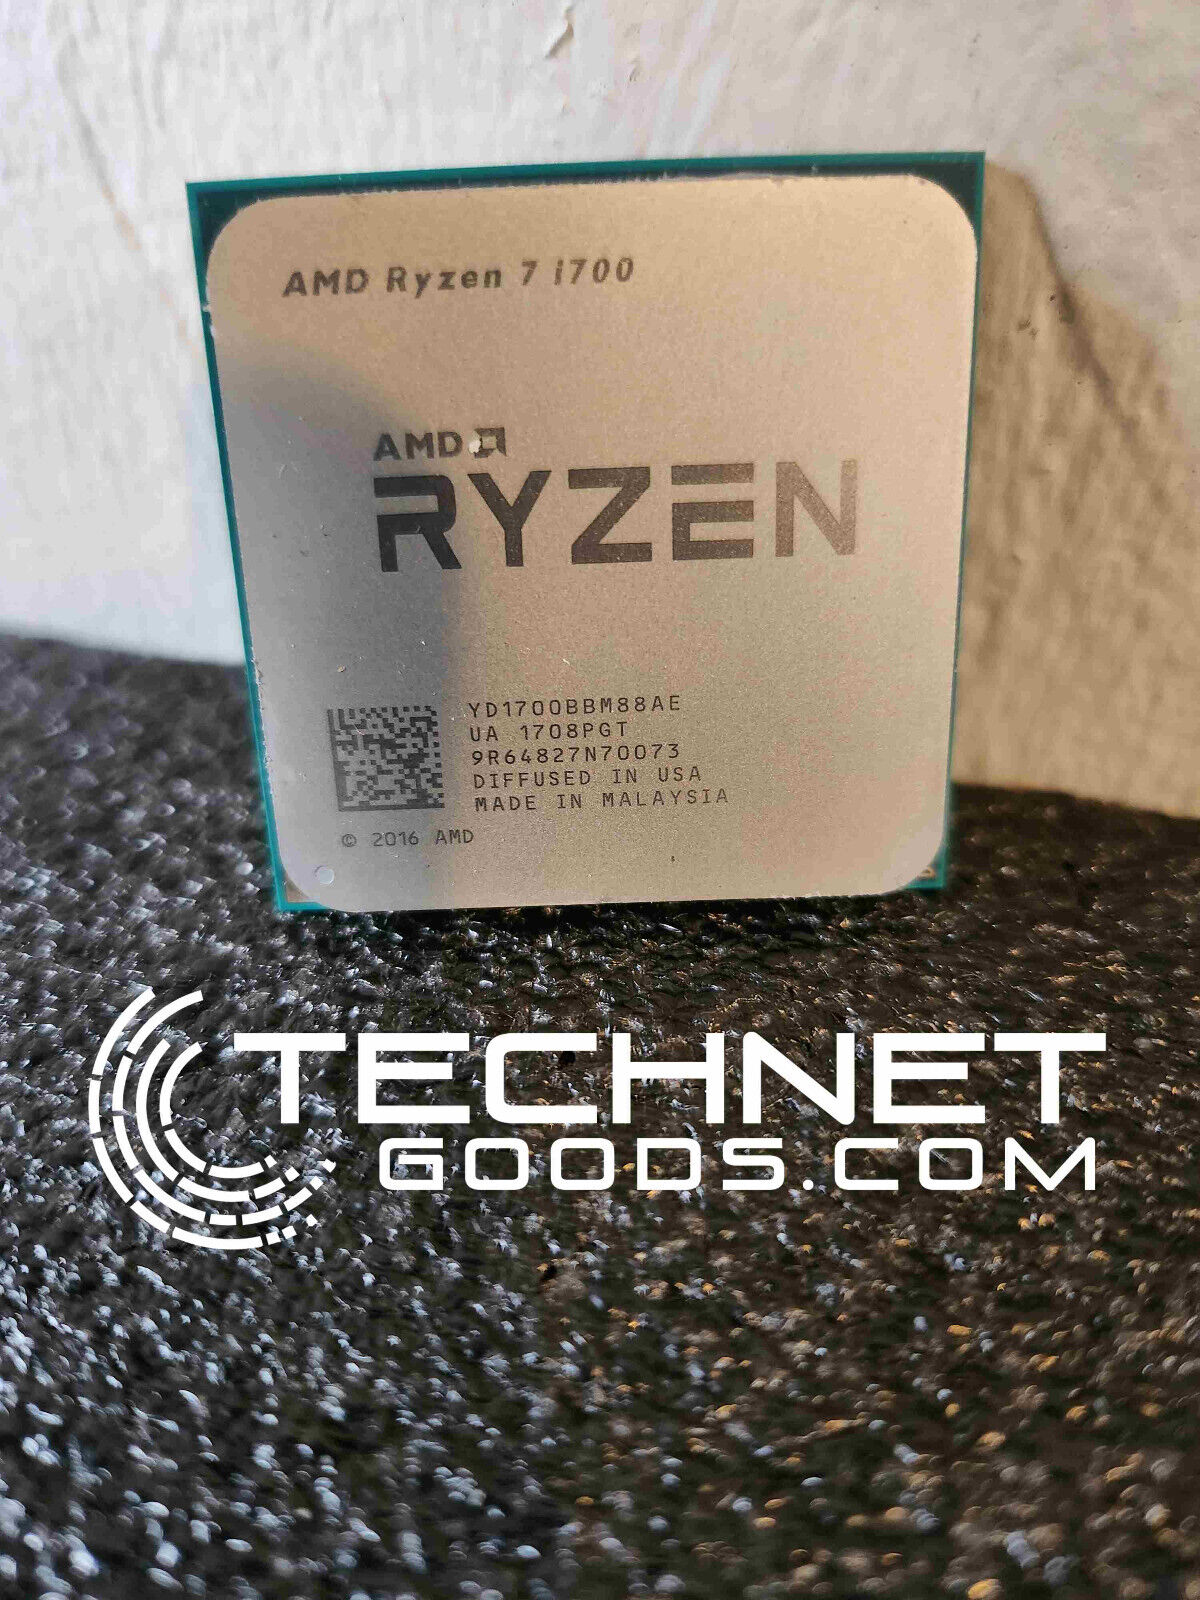 AMD Ryzen 7 1700 3.0GHz (TURBO 3.7GHz) 8-Core AM4 w/fan - TESTED